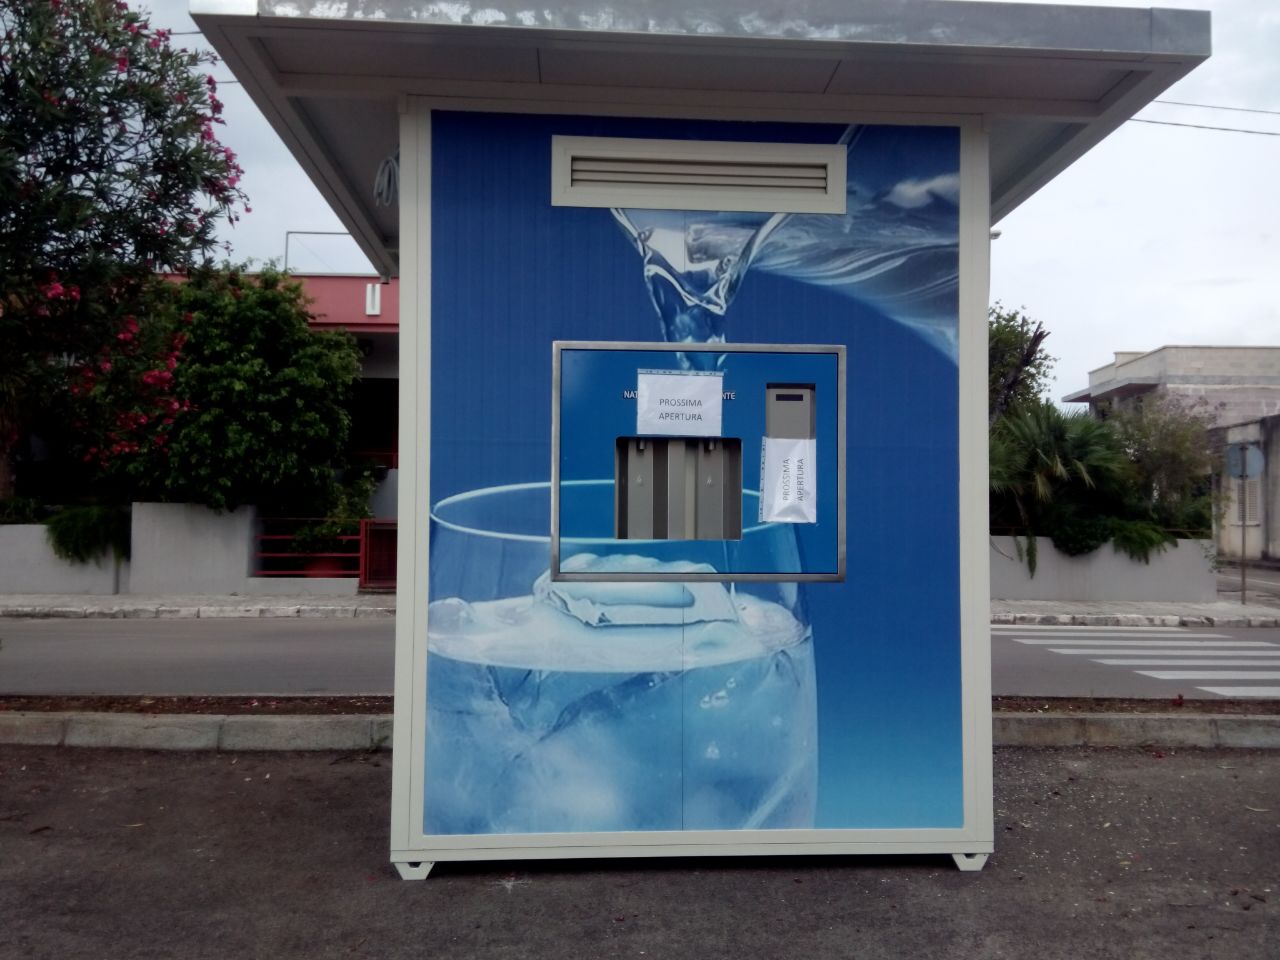 Installato a Borgagne distributore automatico di acqua,la location,si trova in via Lecce ,nei pressi dell’Oratotorio Sant’Antonio